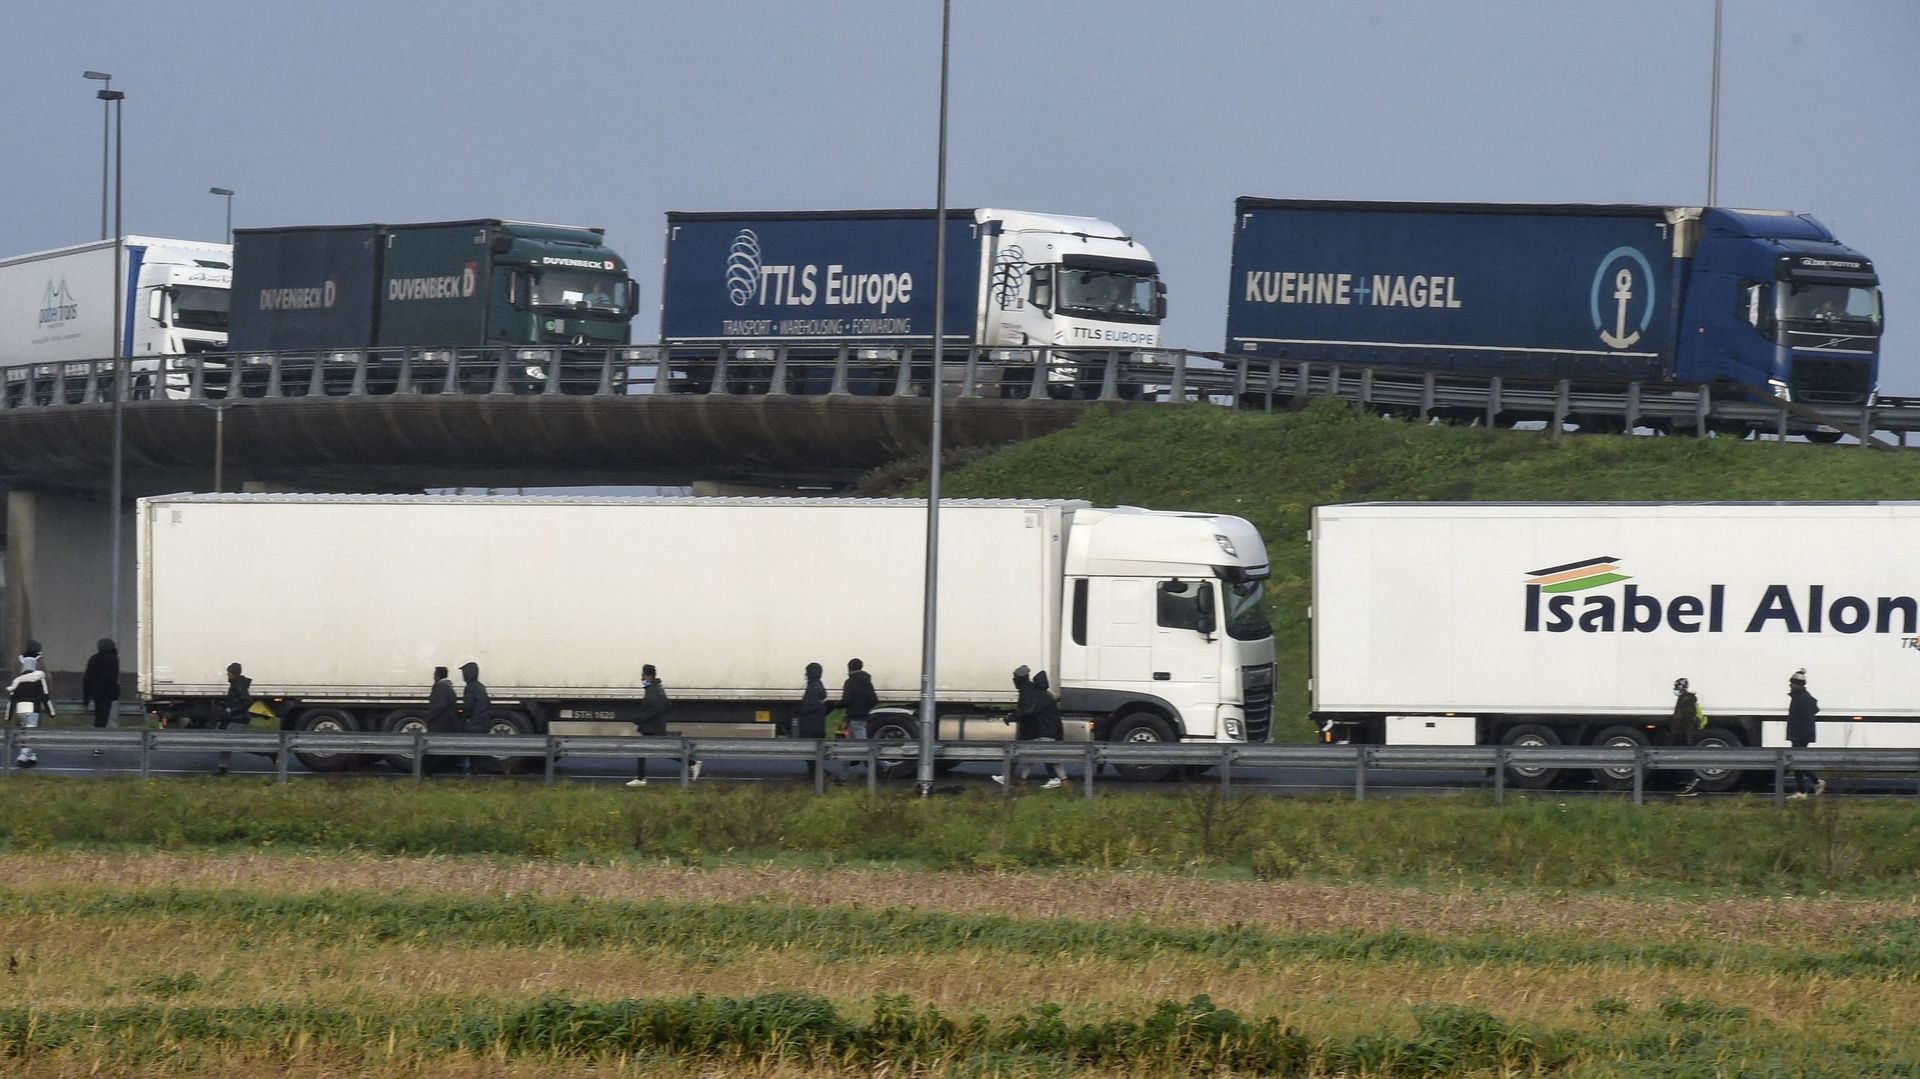 Image d’illustration : Des migrants essaient de monter dans un camion pour tenter d’embarquer sur un ferry pour la Grande-Bretagne, sur l’autoroute A16 près de Calais, dans le nord de la France, le 17 décembre 2020.